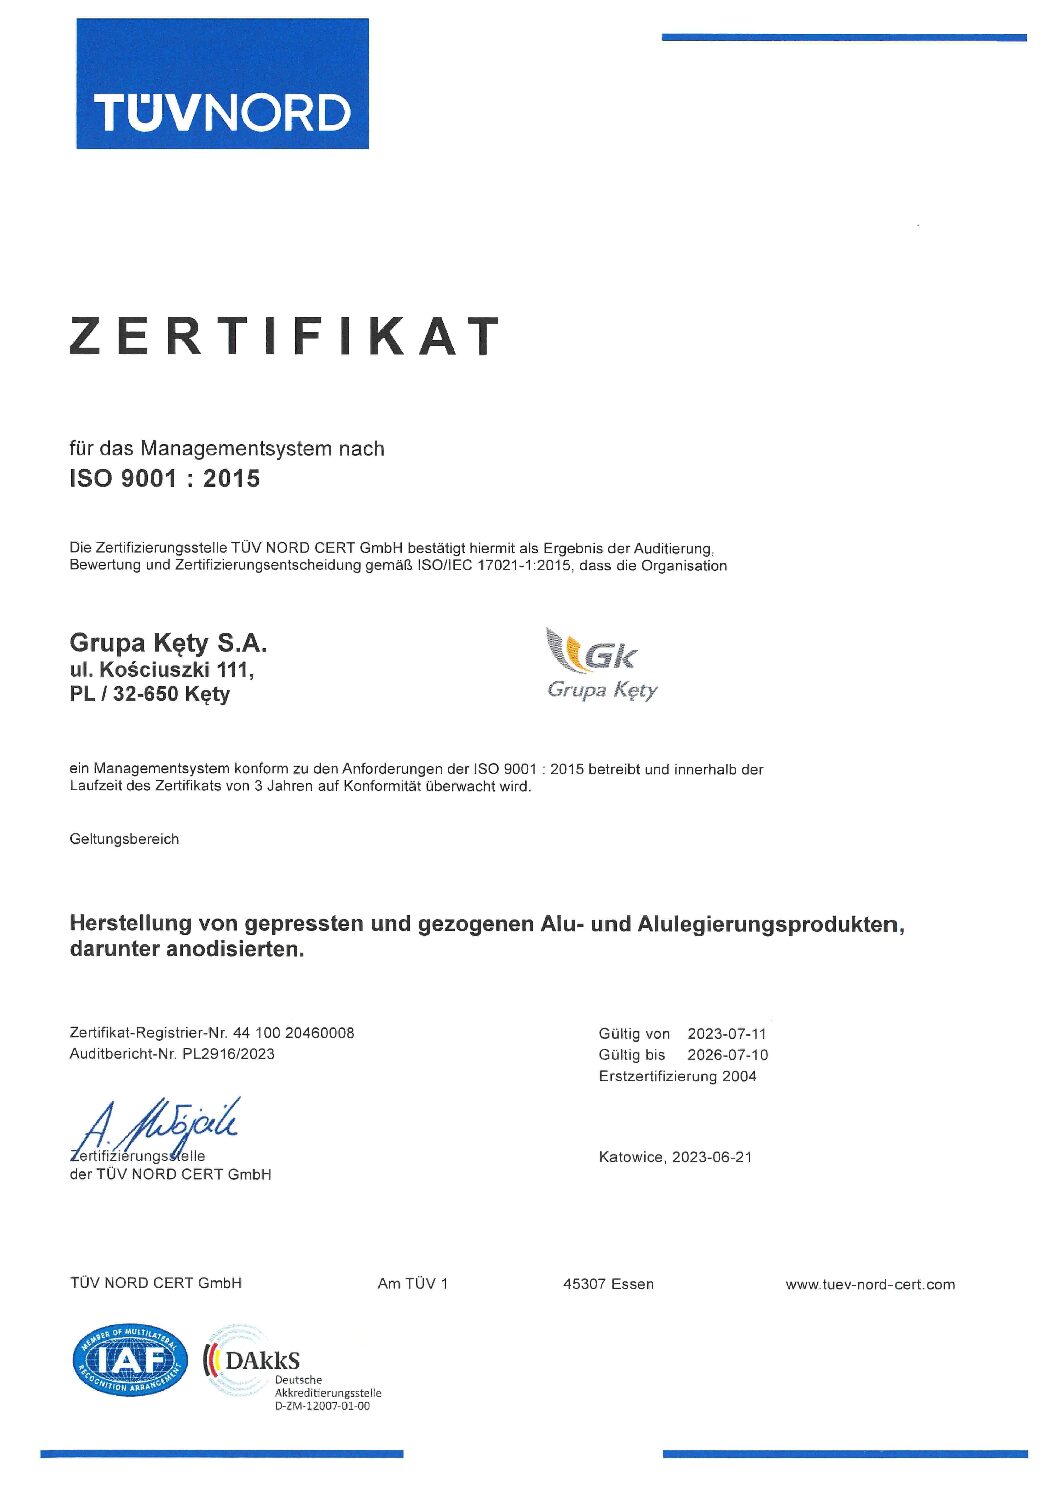 Grupa Kety S.A. – Certificate ISO 9001